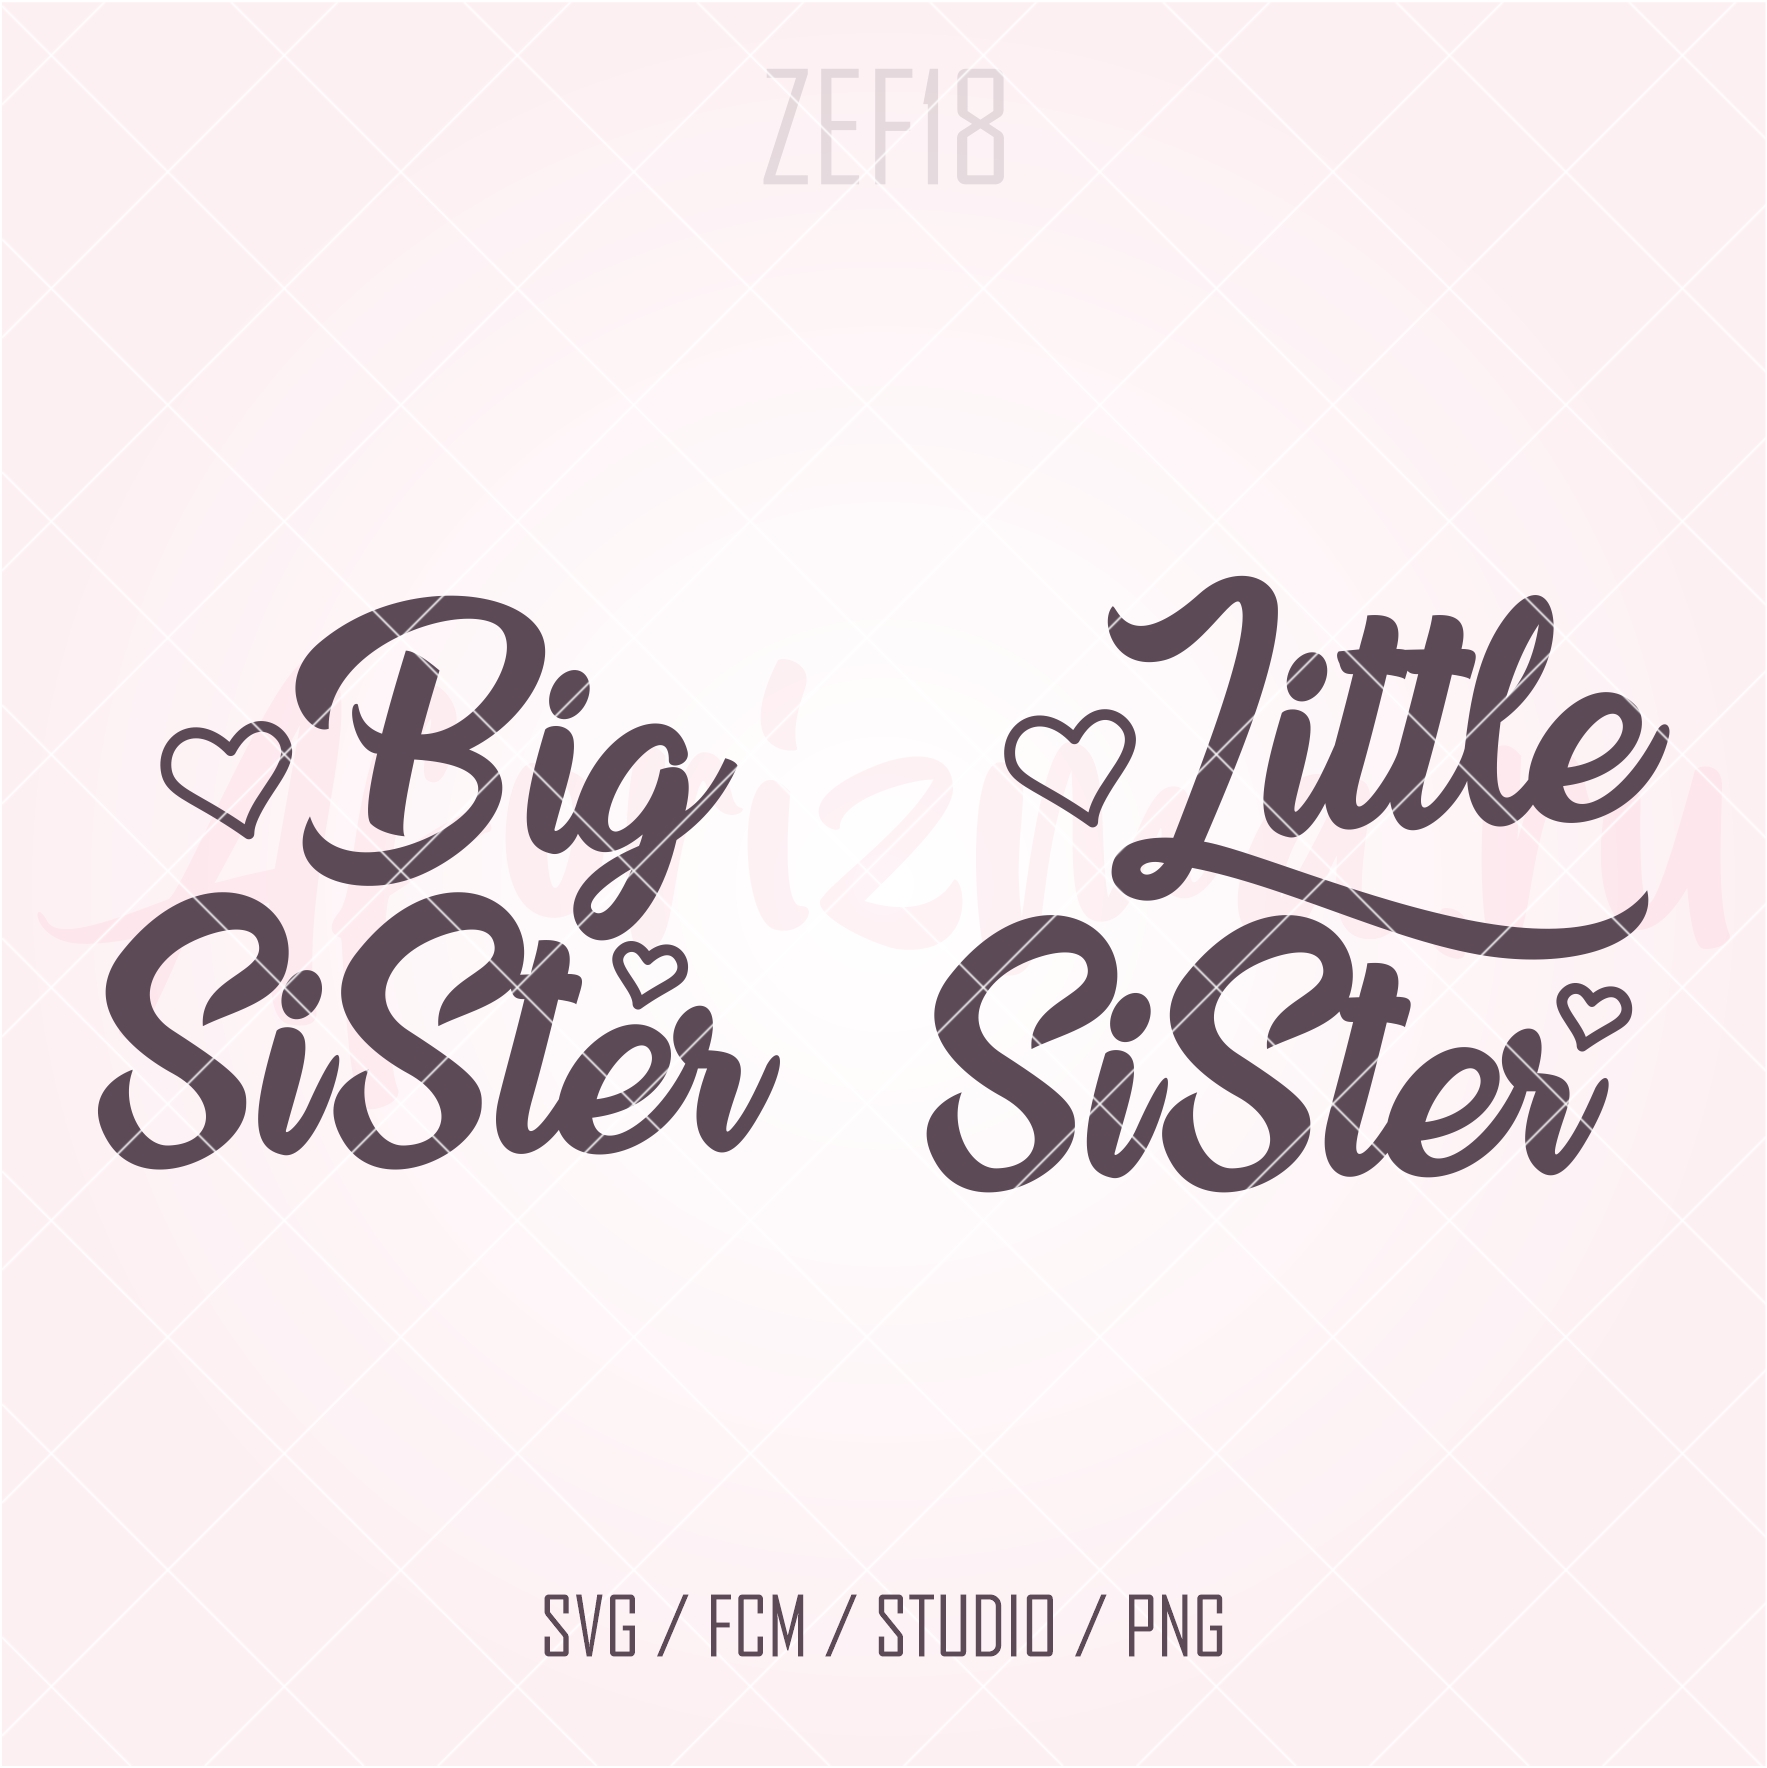 (ZEF18) Sister